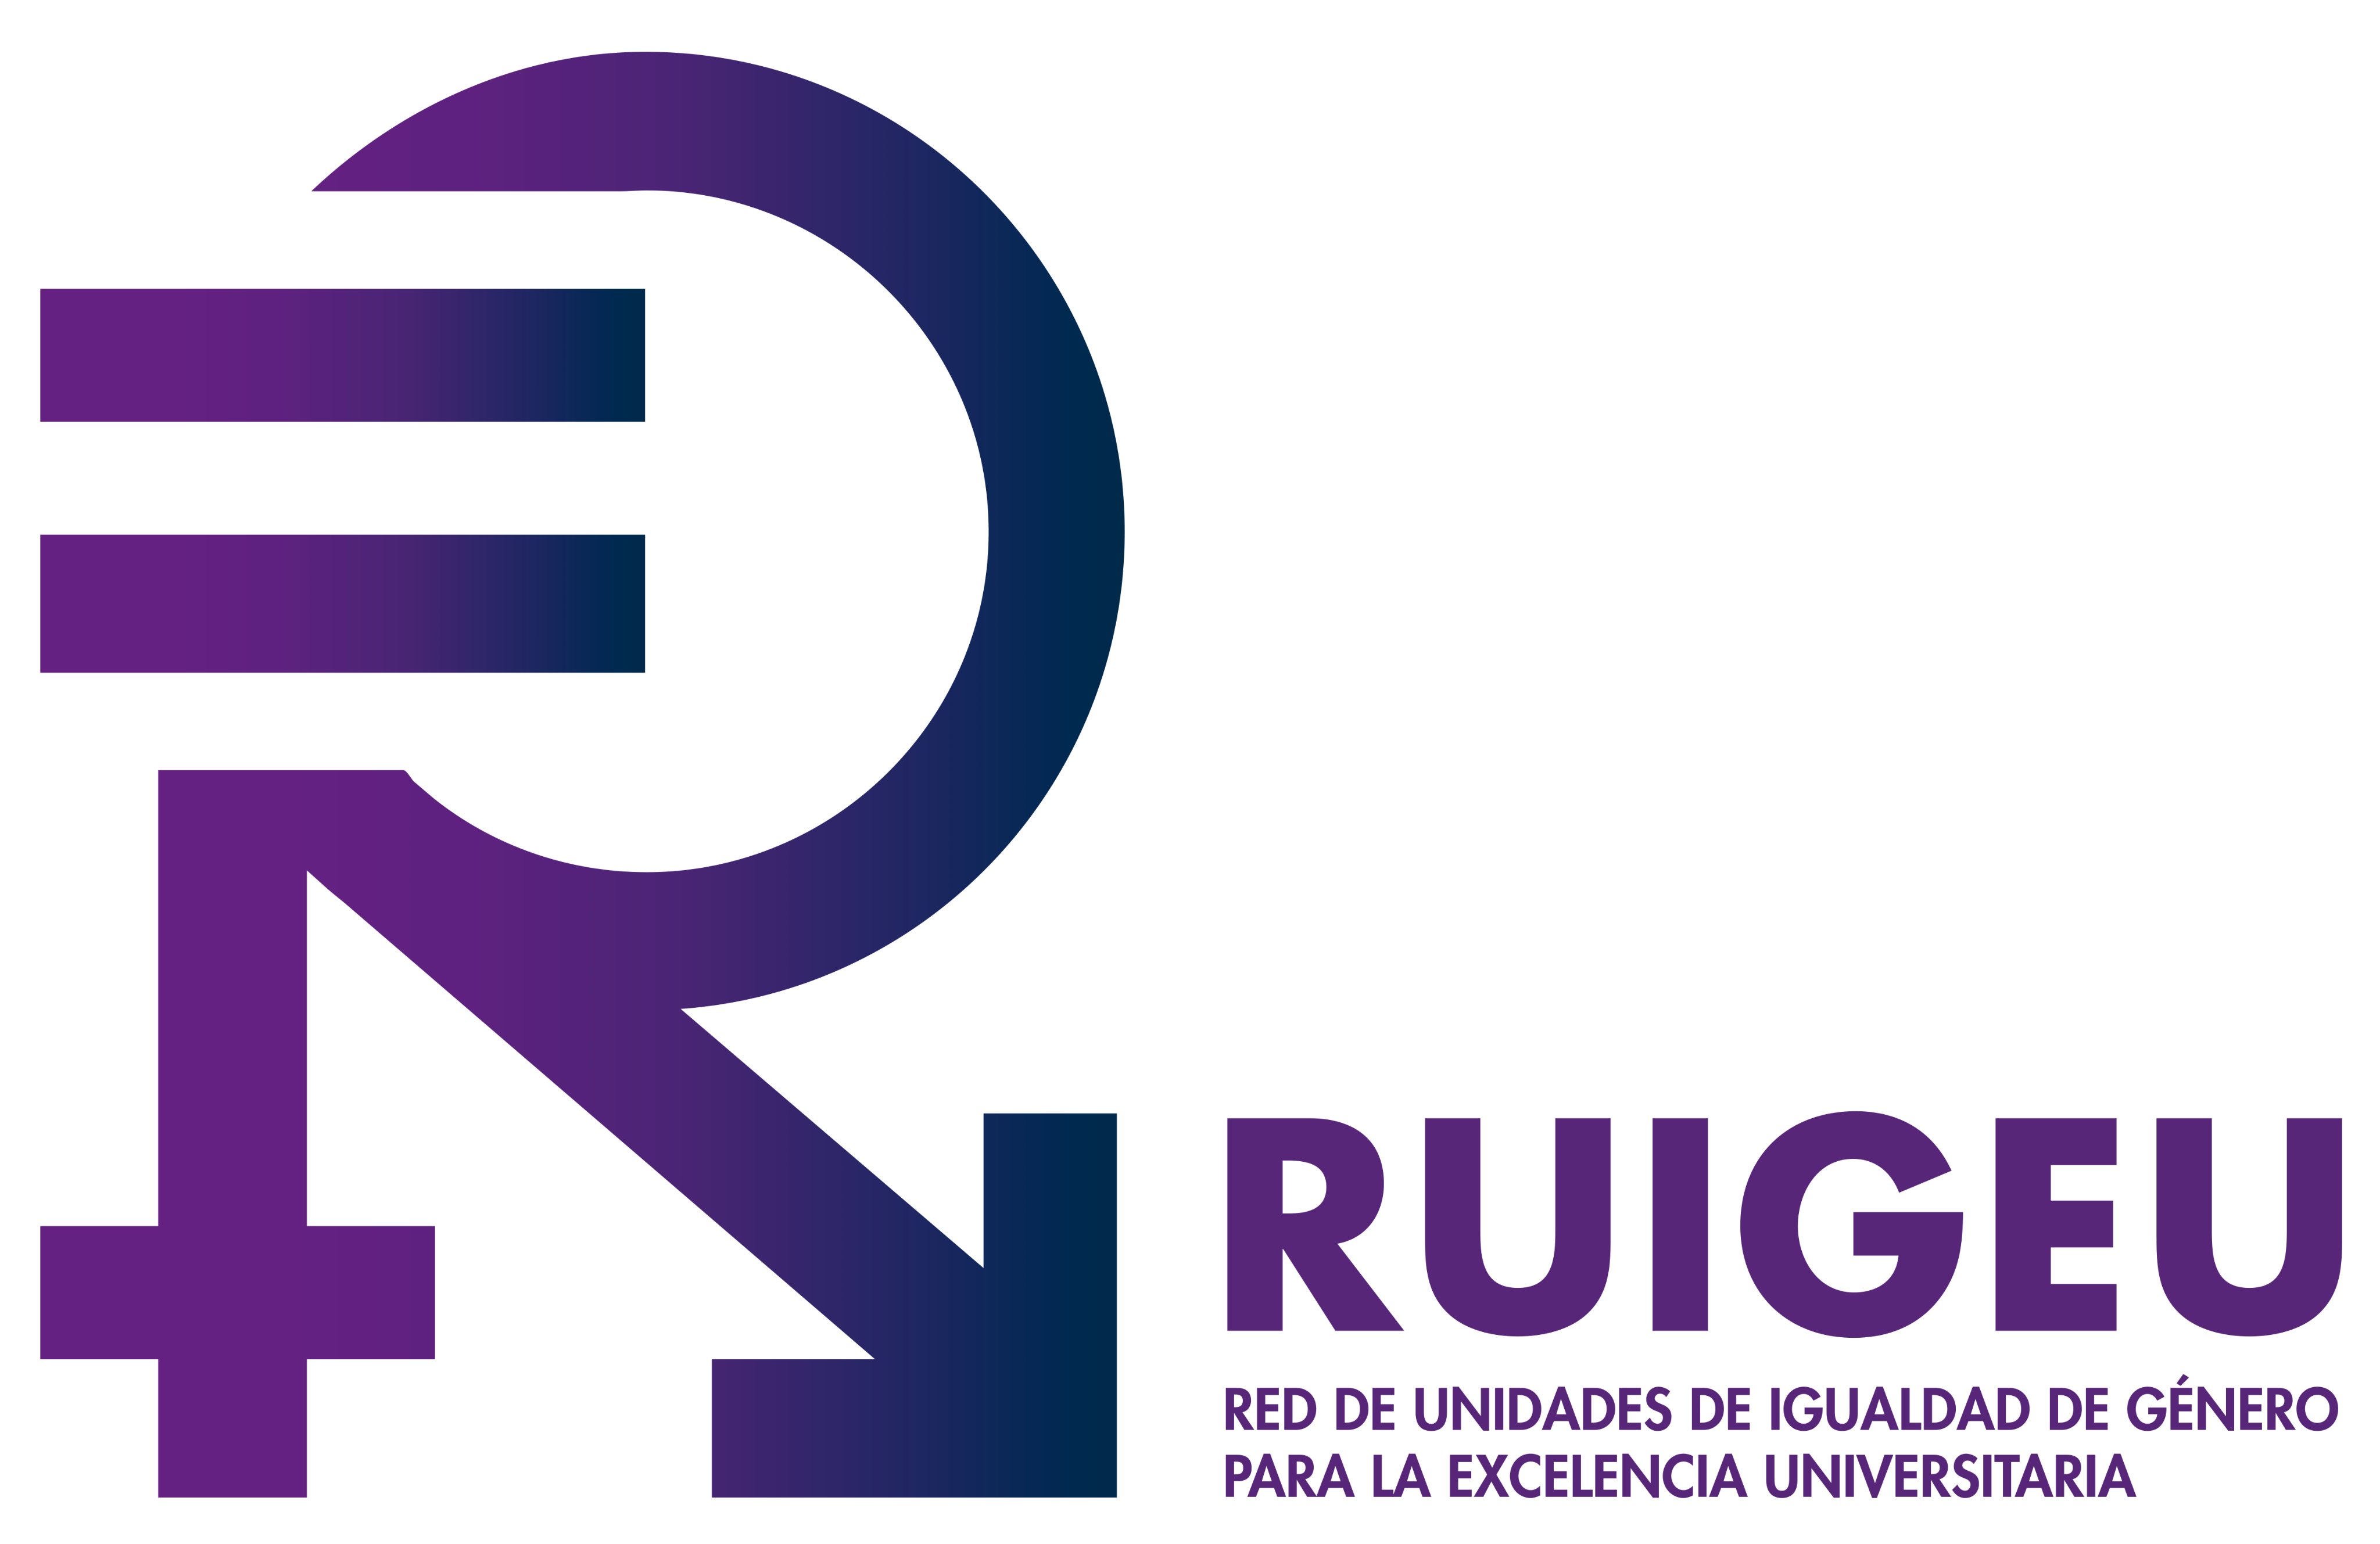 https://www.uv.es/ruigeu/ca/xarxa-unitats-igualtat-genere-excel-lencia-universitaria-ruigeu.html